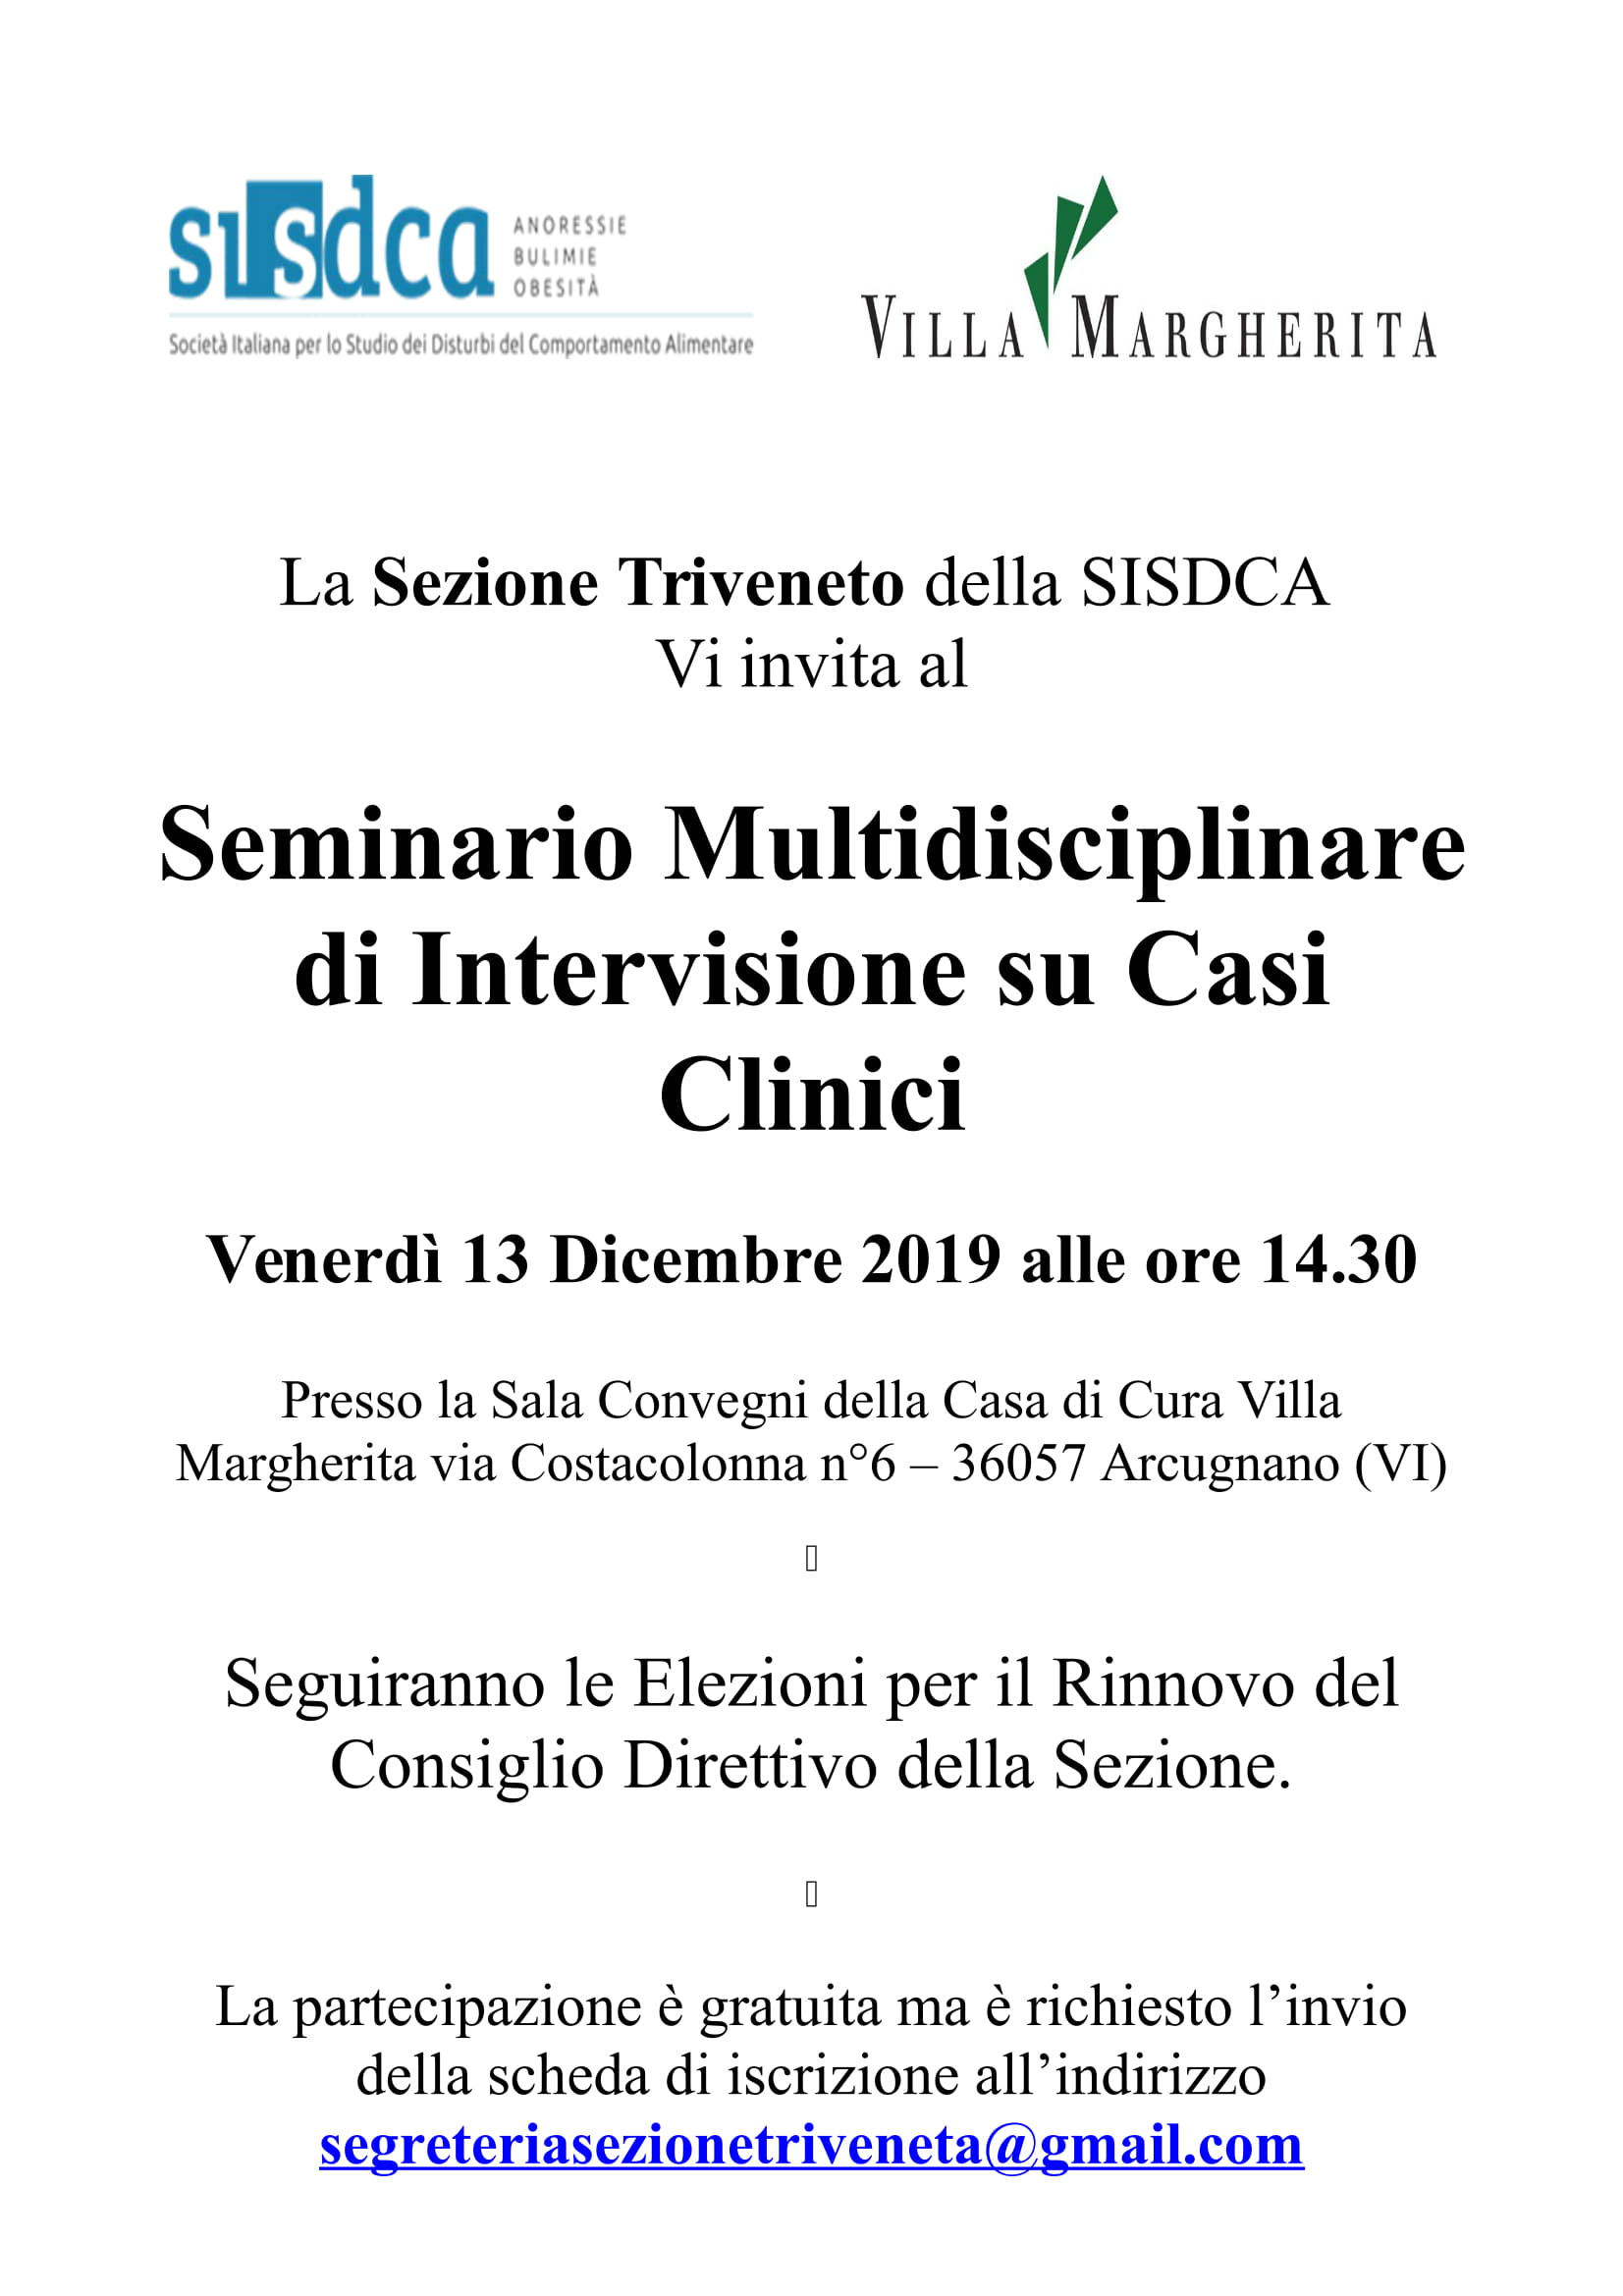 13 dicembre 2019 - Seminario Multidisciplinare di Intervisione su Casi Clinici